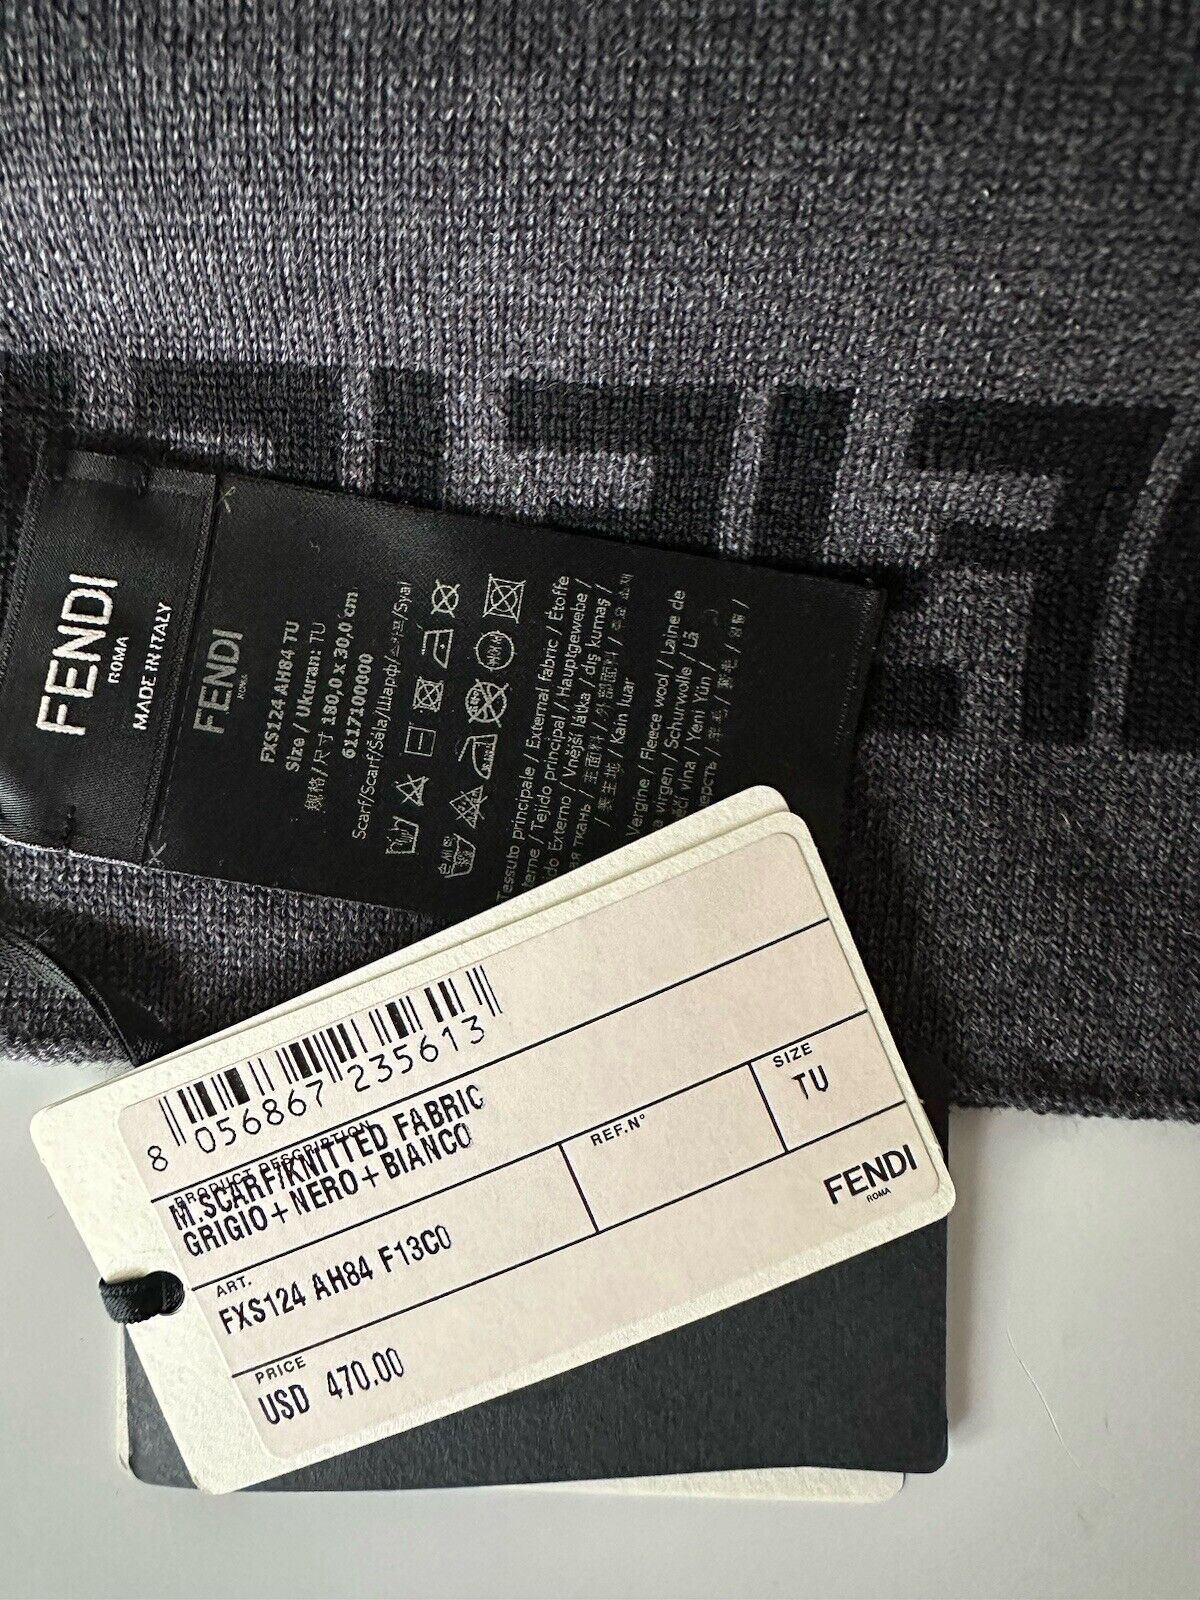 NWT 470 $ Fendi FF Logo Strickschal aus Wolle in Schwarz/Grau 12 W x 73,5 L FXS124 Italien 